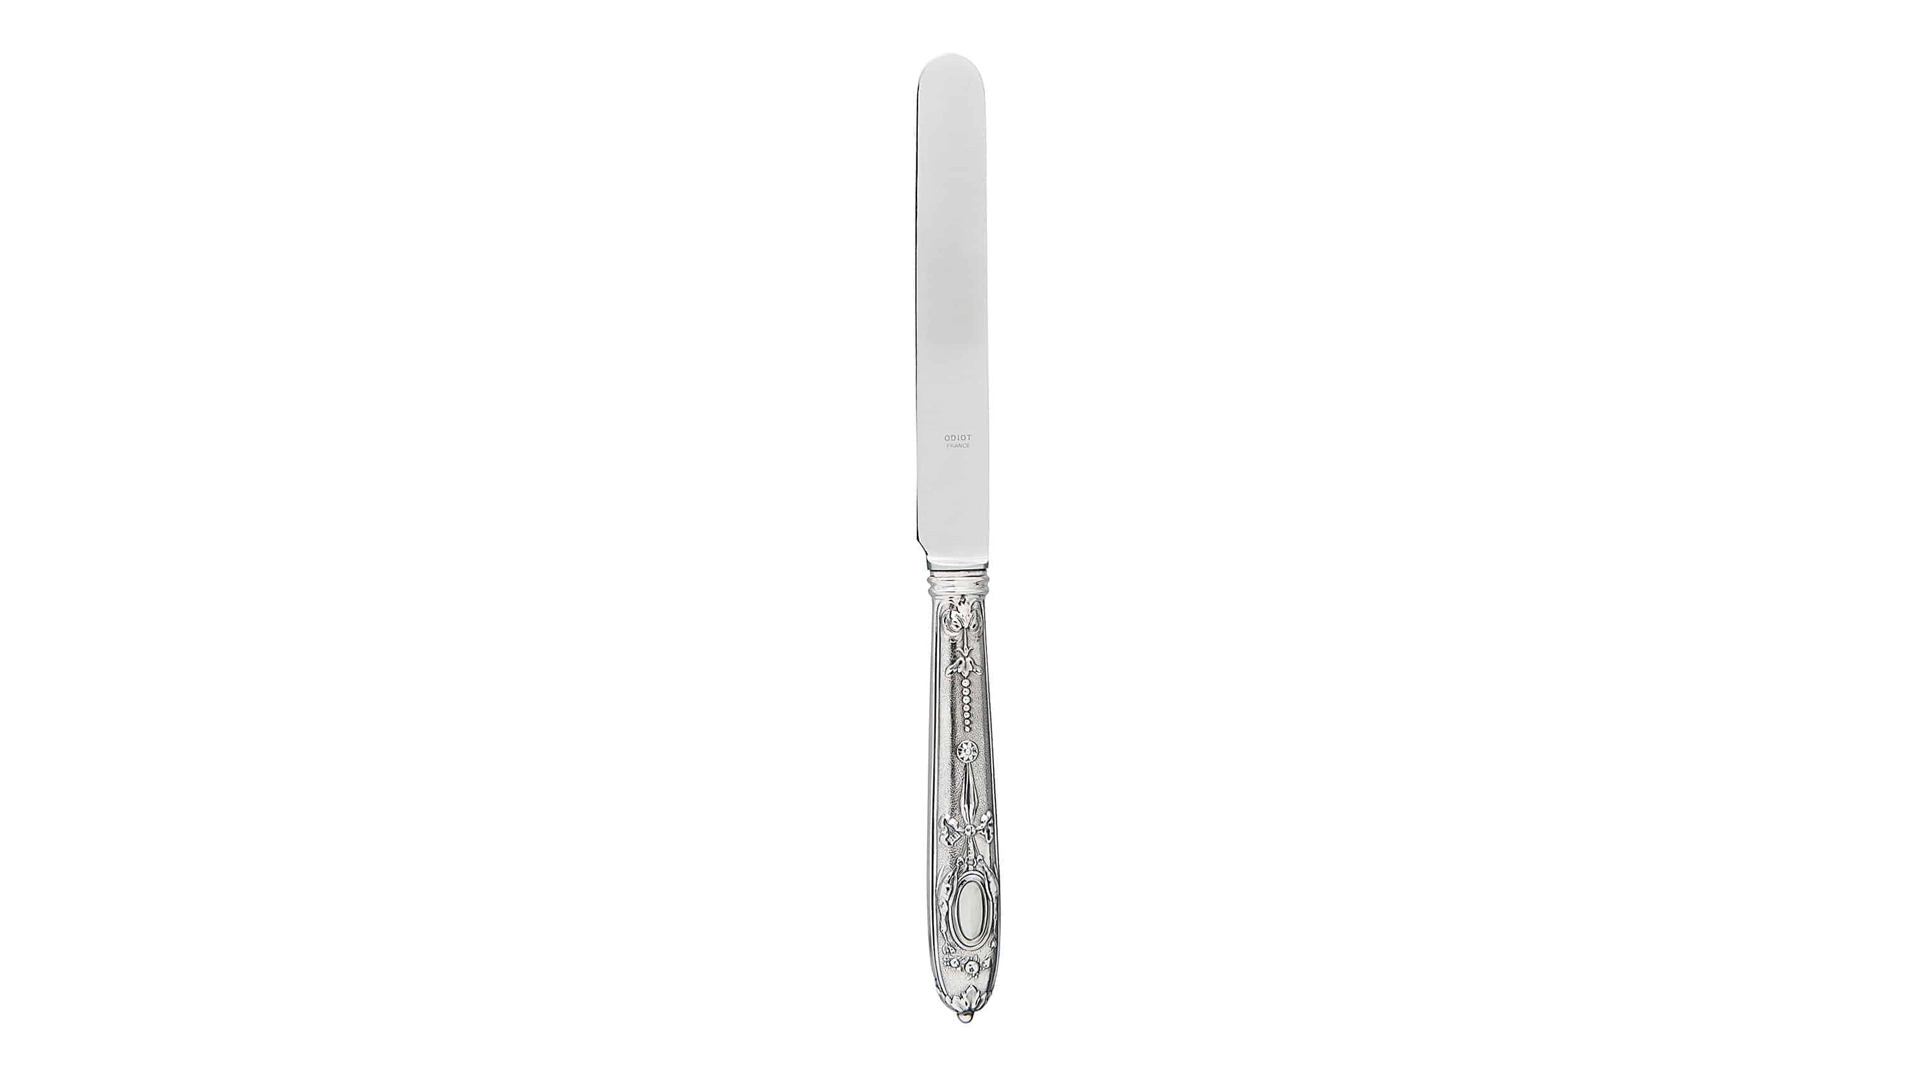 Набор ножей десертных Odiot Компьень 22 см, 6 шт, серебро 925